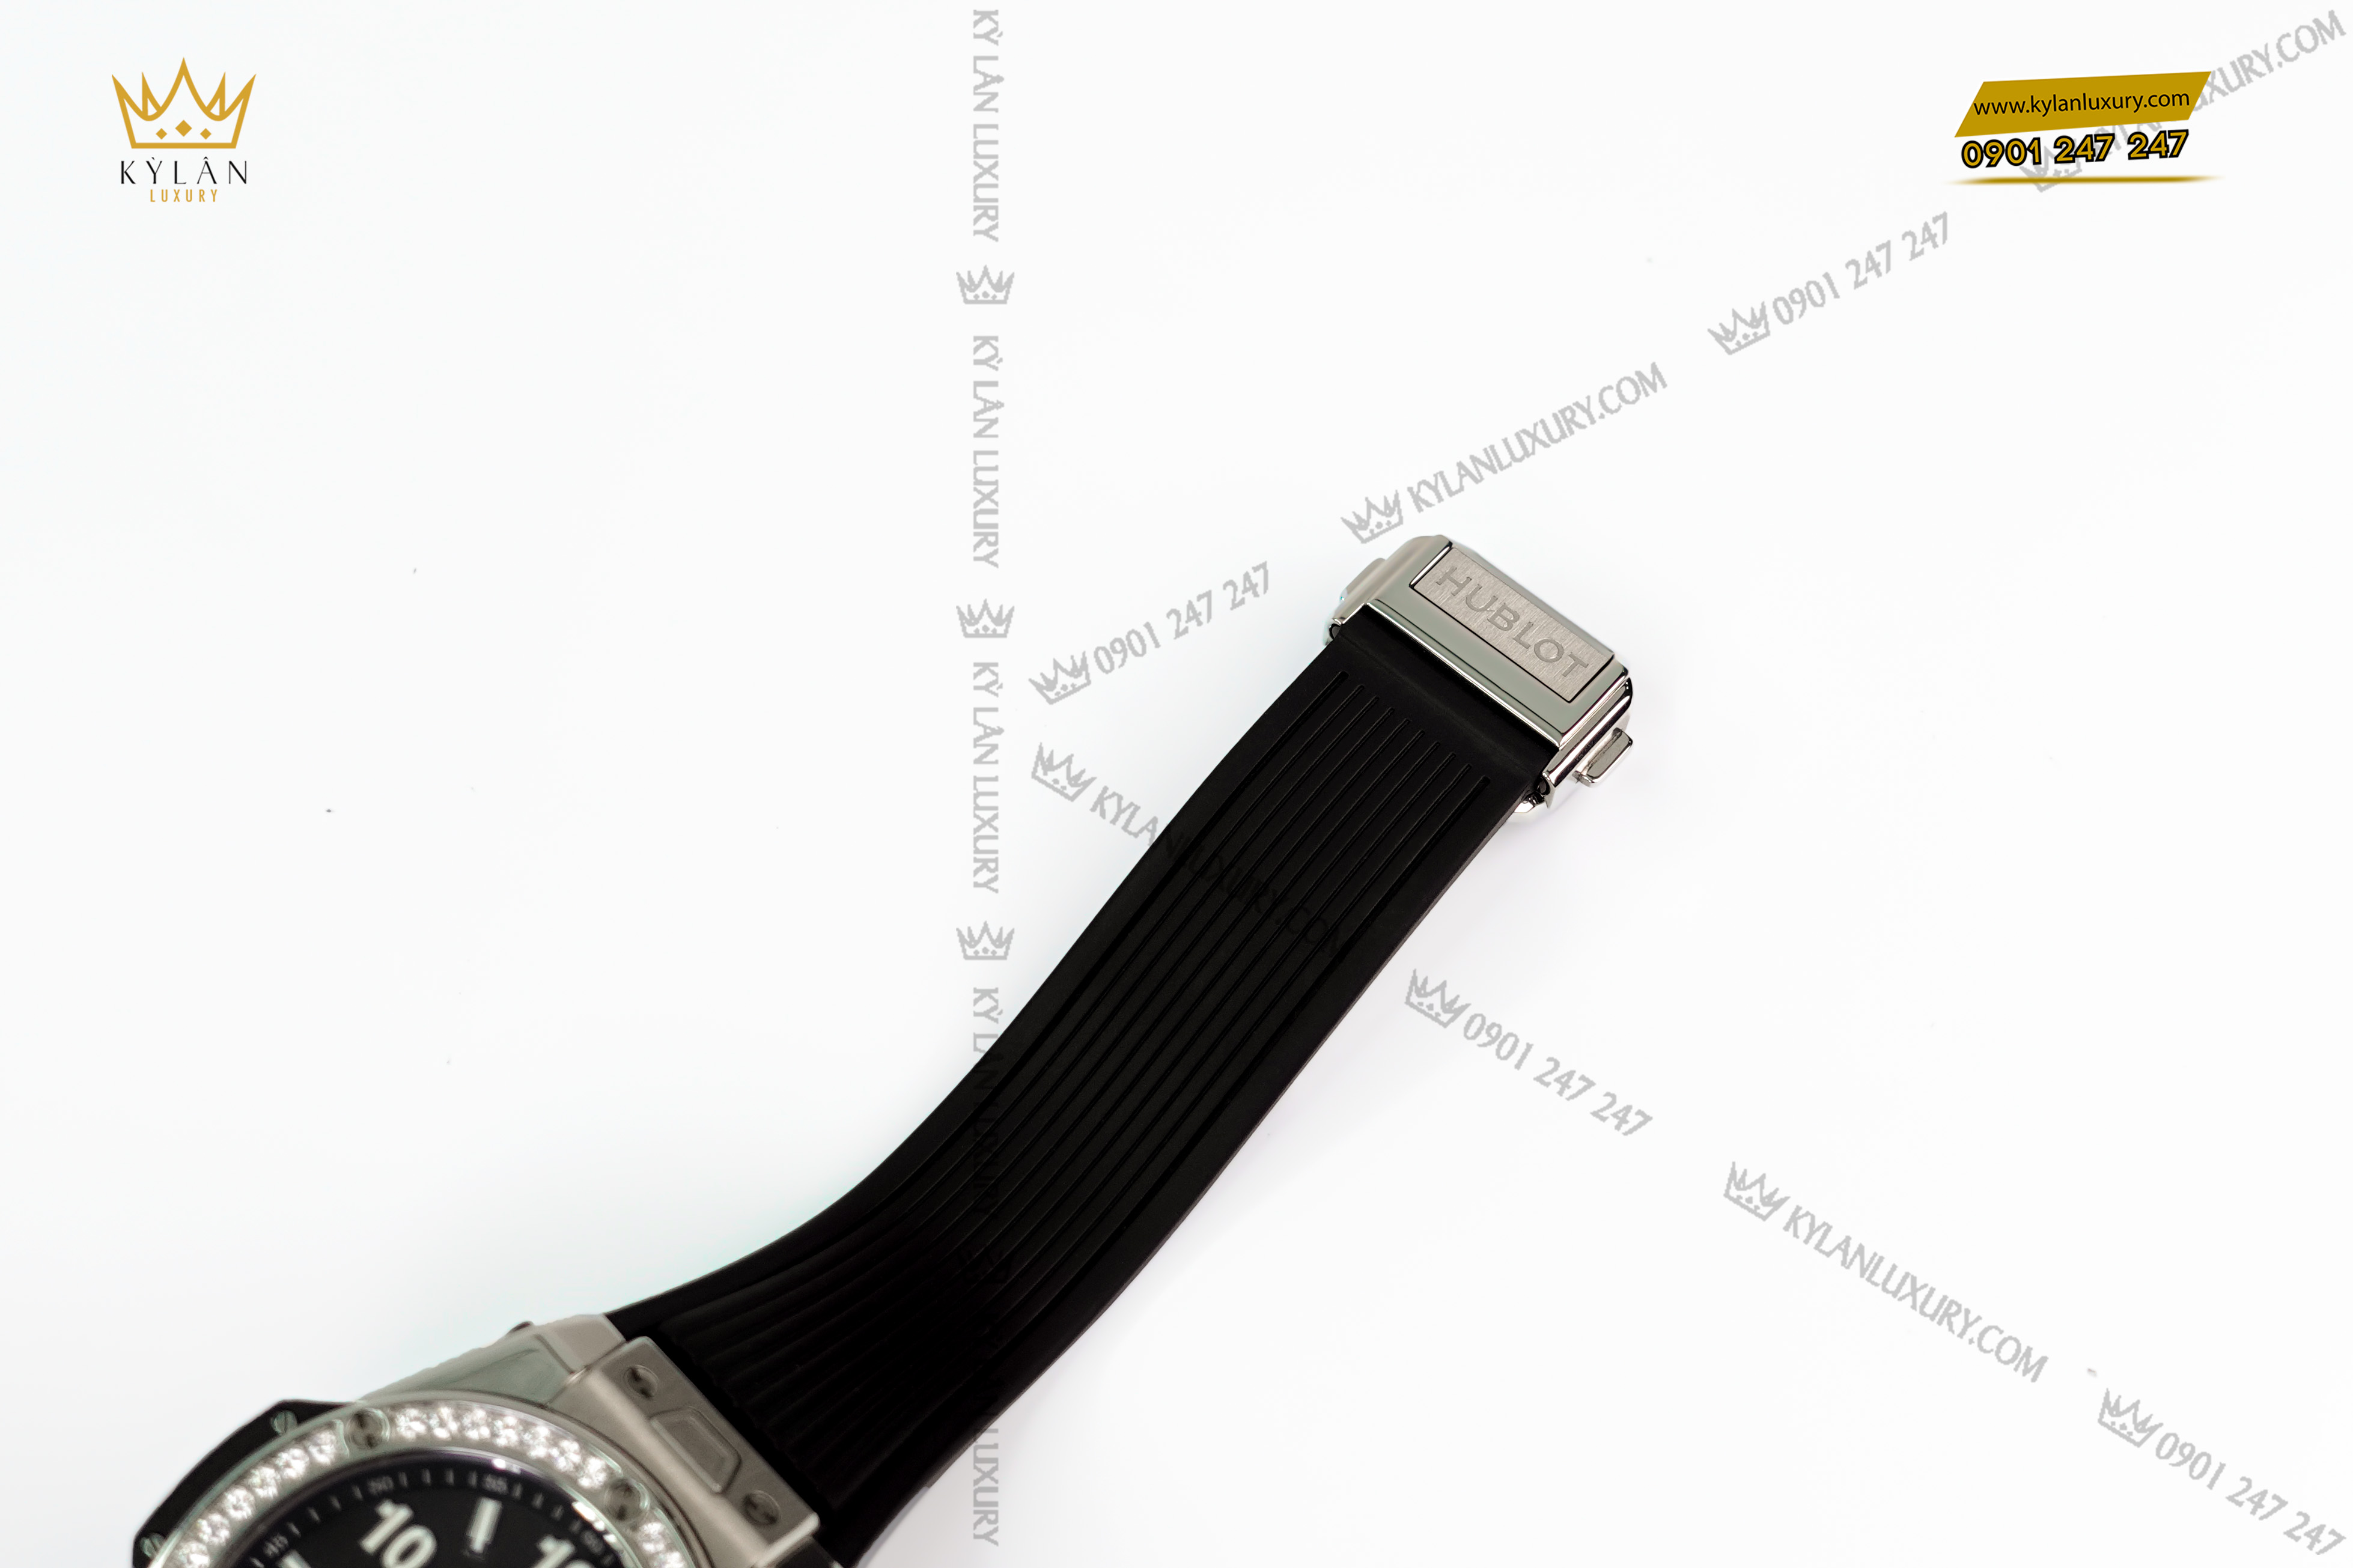 Phần khóa chốt tại dây đeo của đồng hồ khắc tên thương hiệu vô cùng nổi bật